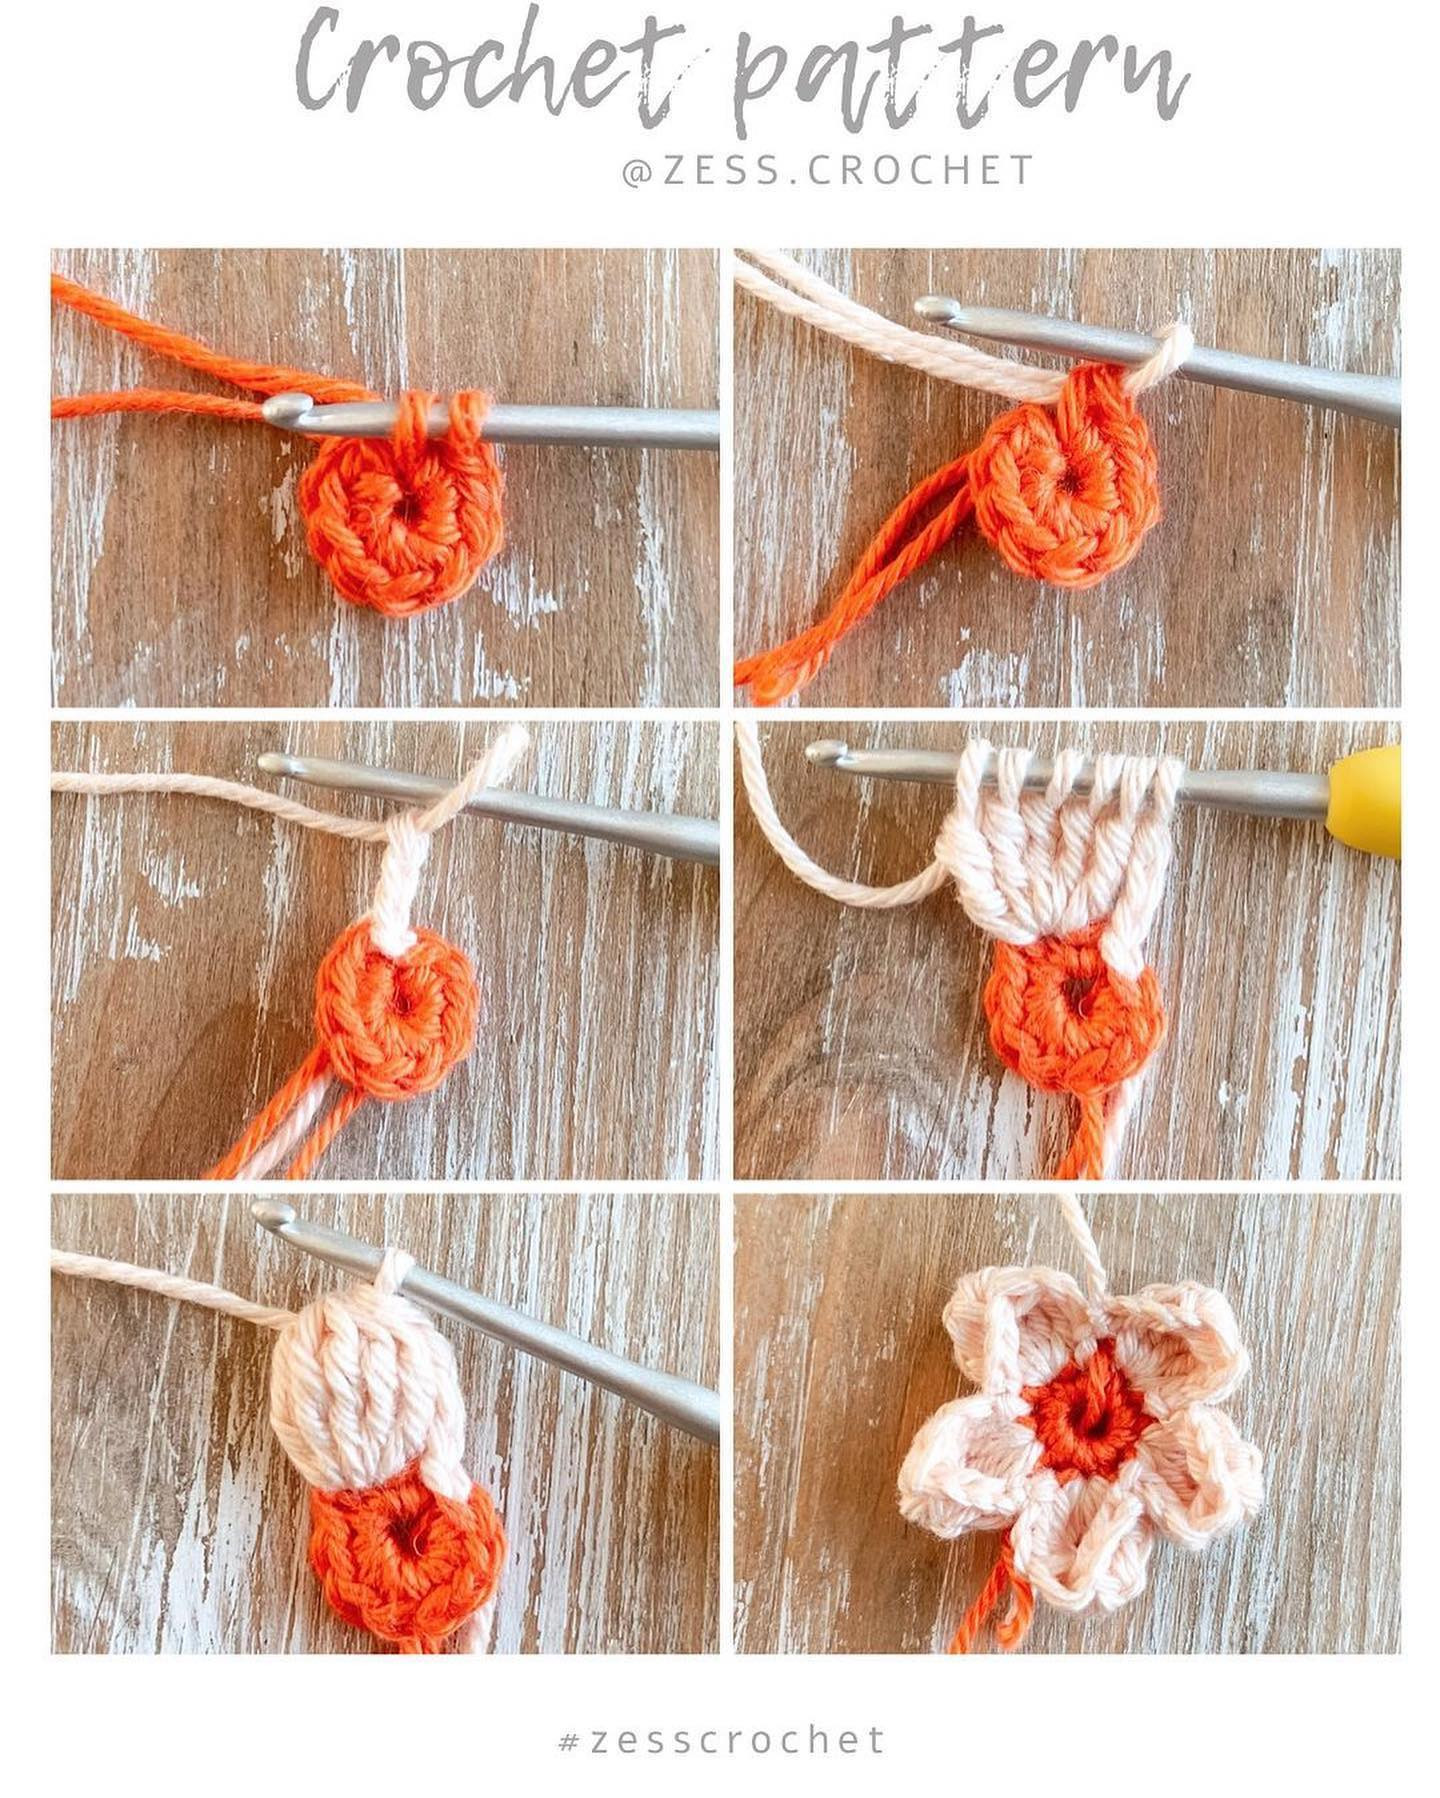 Five-petaled flower crochet pattern